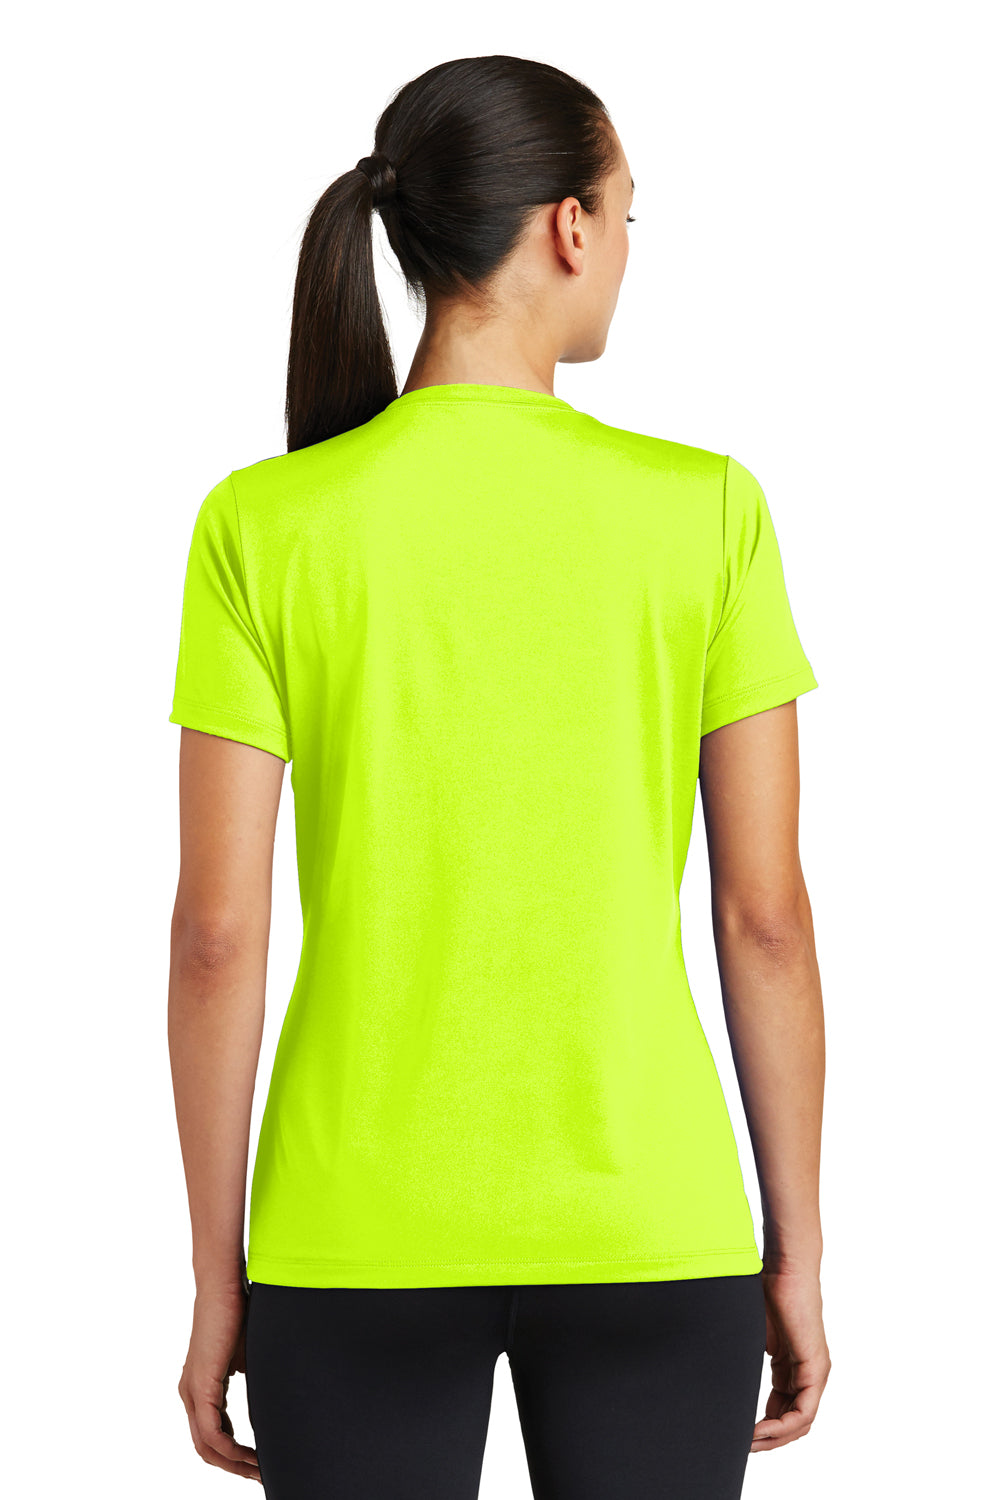 Sport-Tek LST320 Womens Tough Moisture Wicking Short Sleeve Crewneck T-Shirt Neon Yellow Back